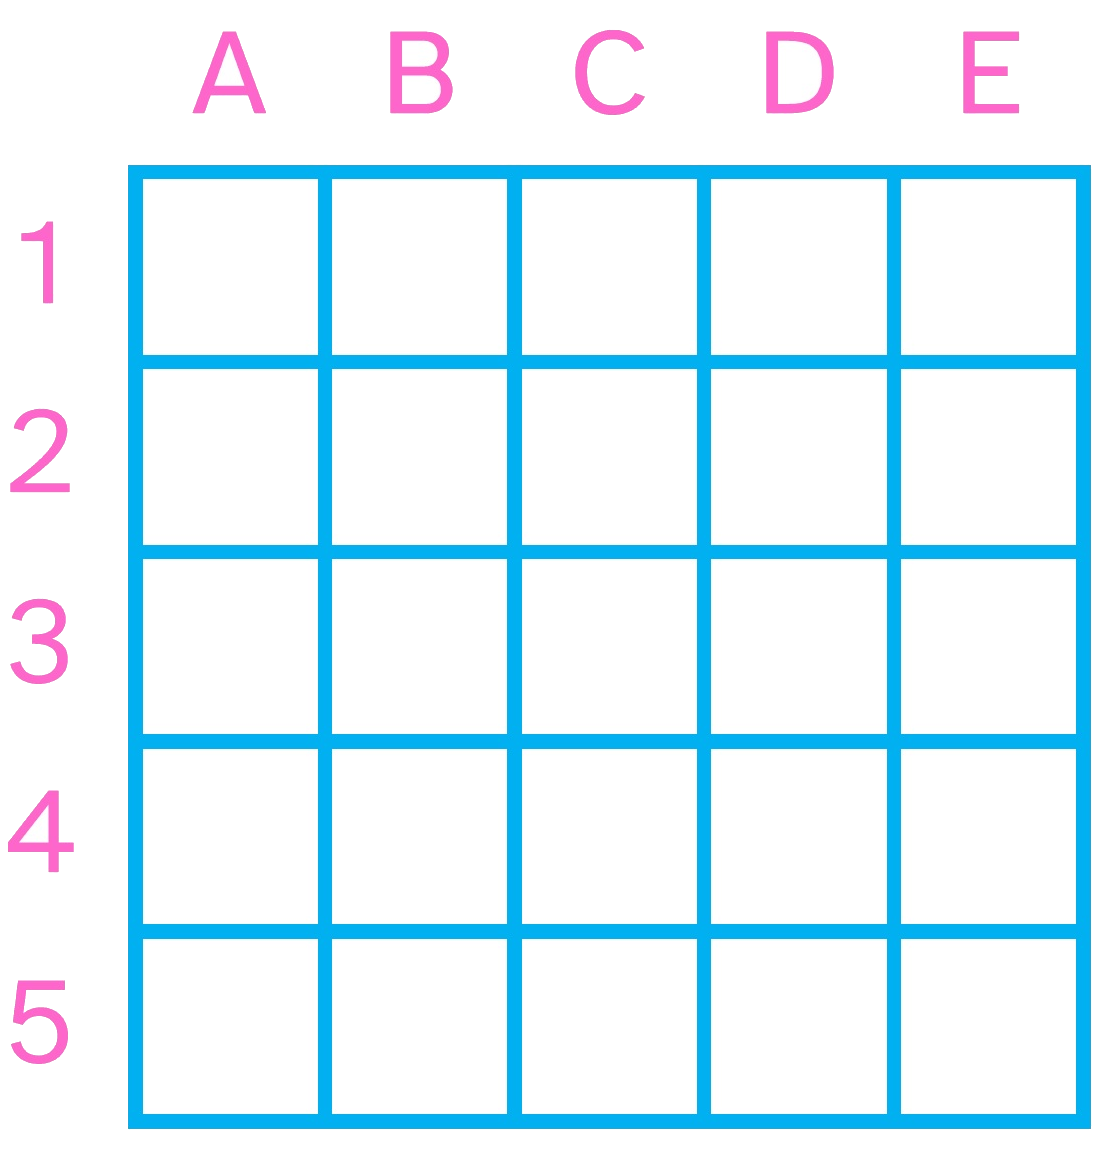 La imagen muestra una cuadrícula de 5x5 de color azul, con las filas nombradas con números y las columnas con letras, y cada casilla señalada con su posición